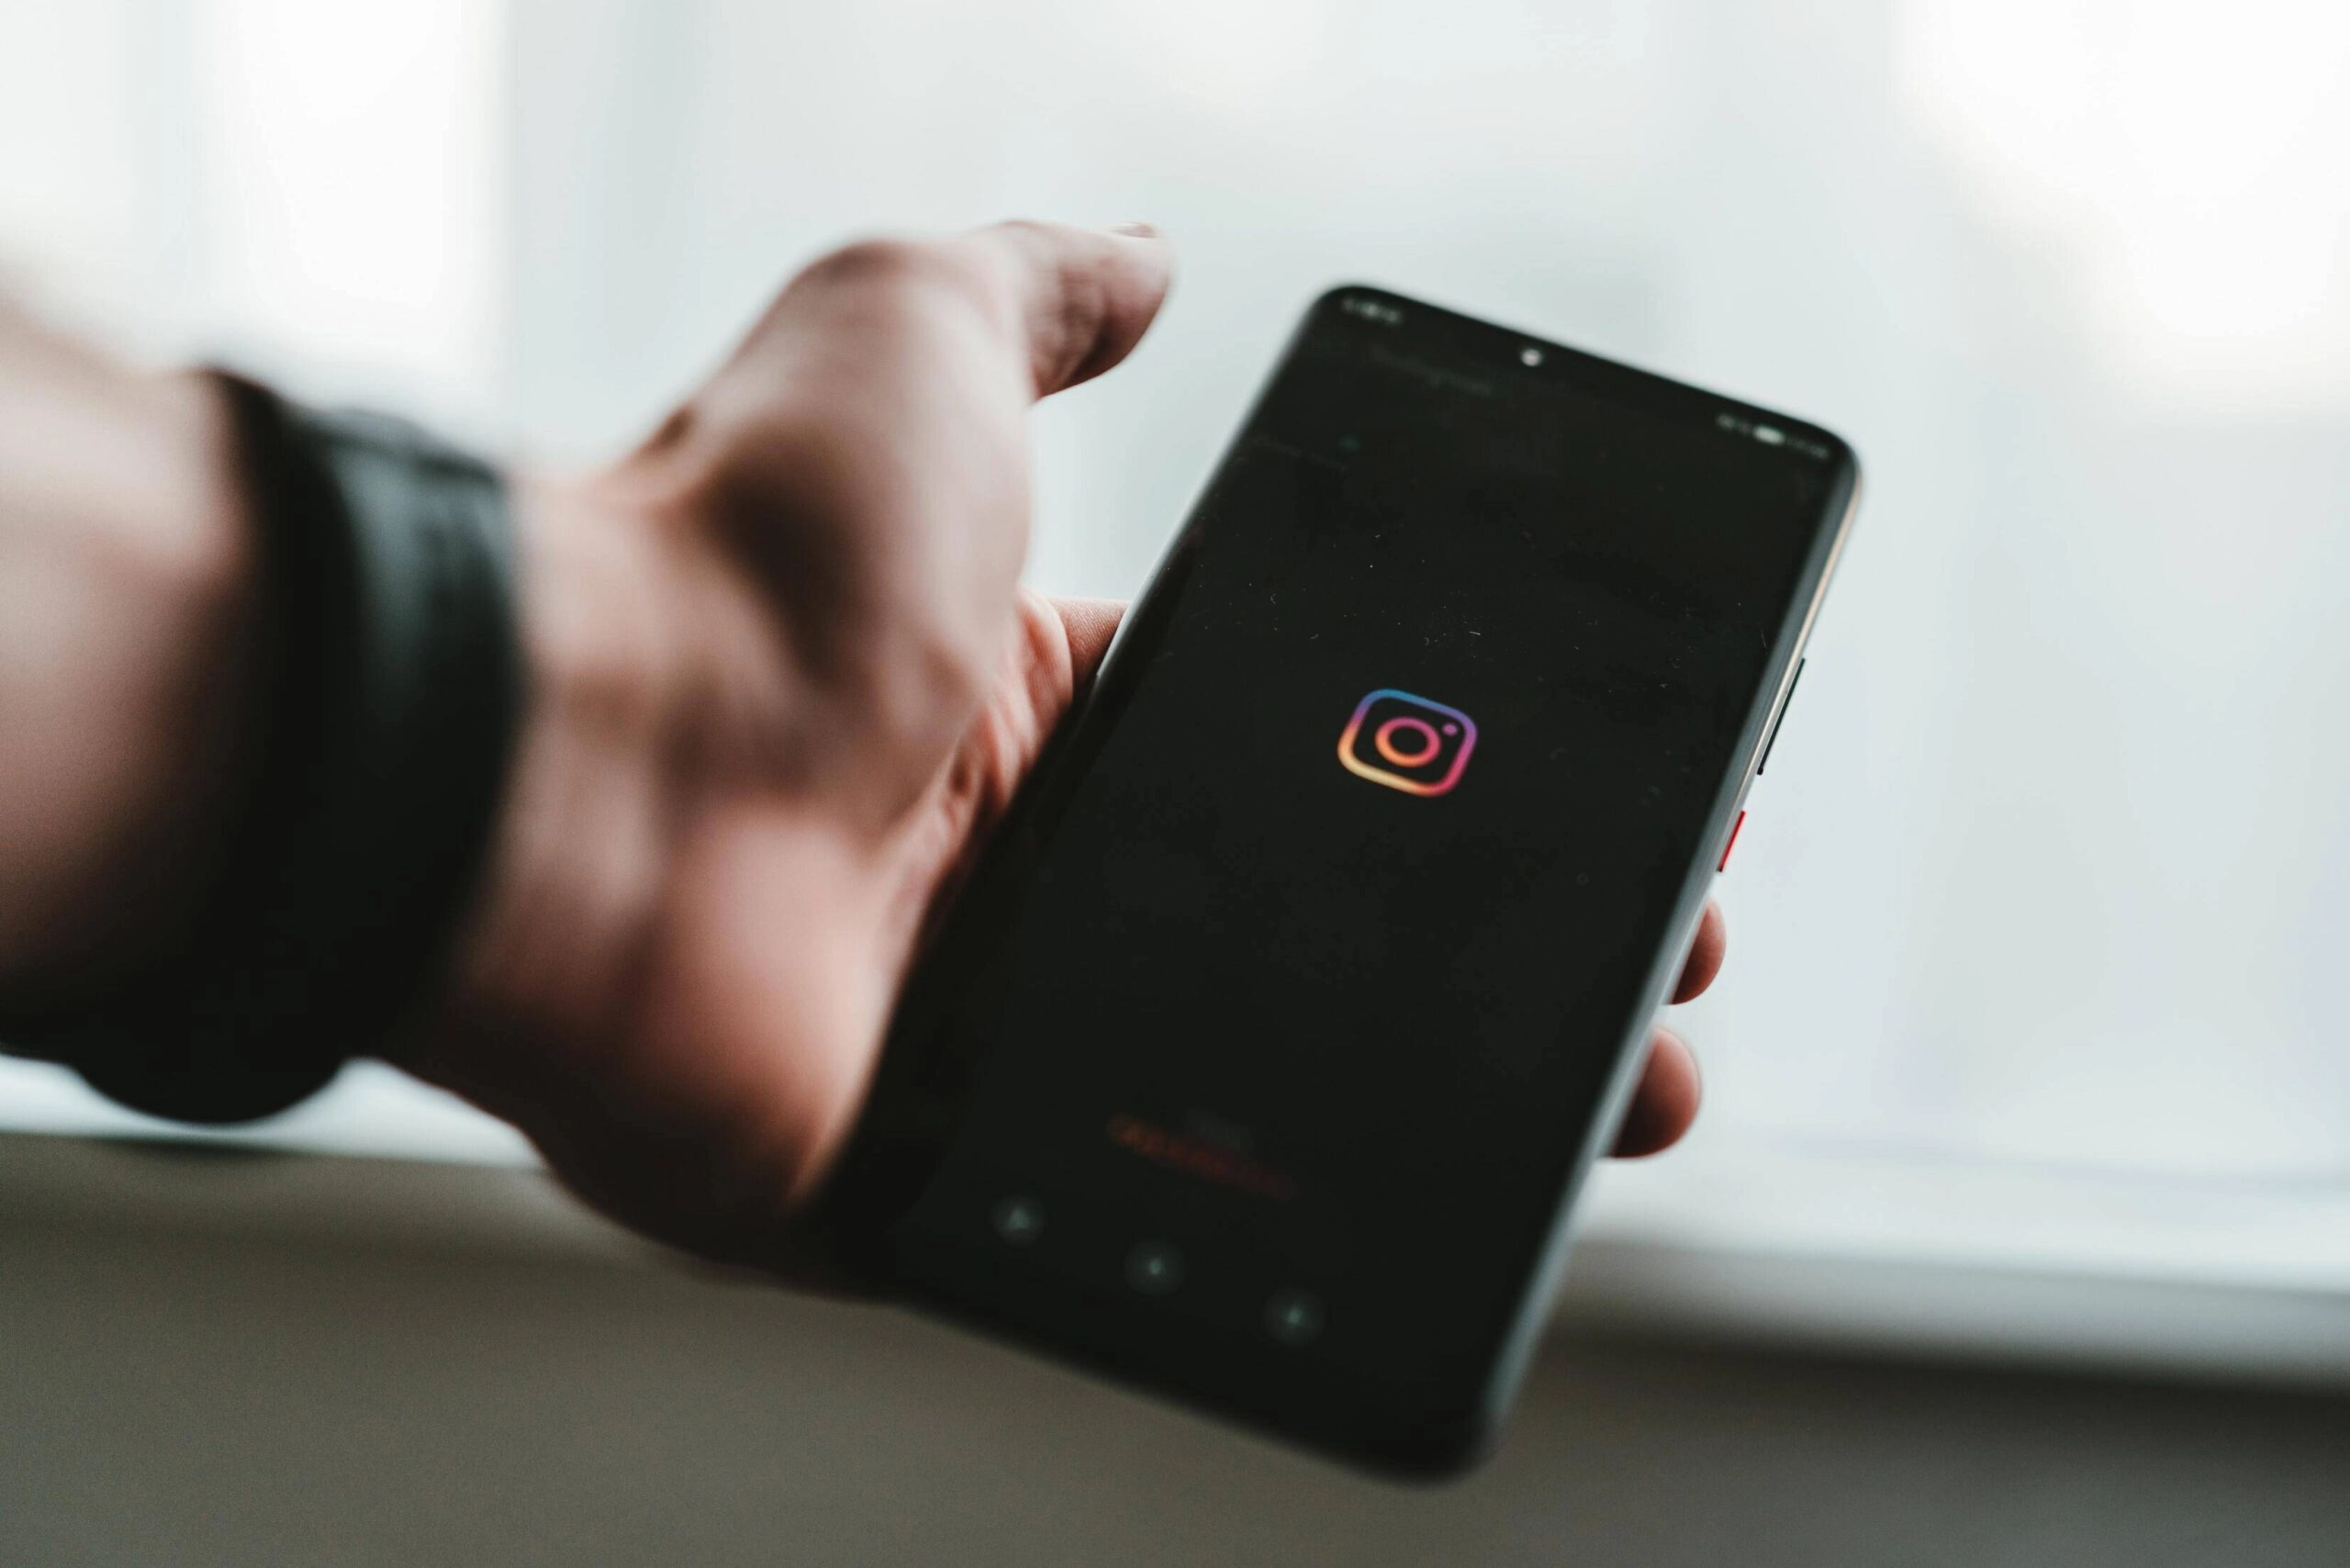 App promotie via Instagram? Wij geven tips & tricks